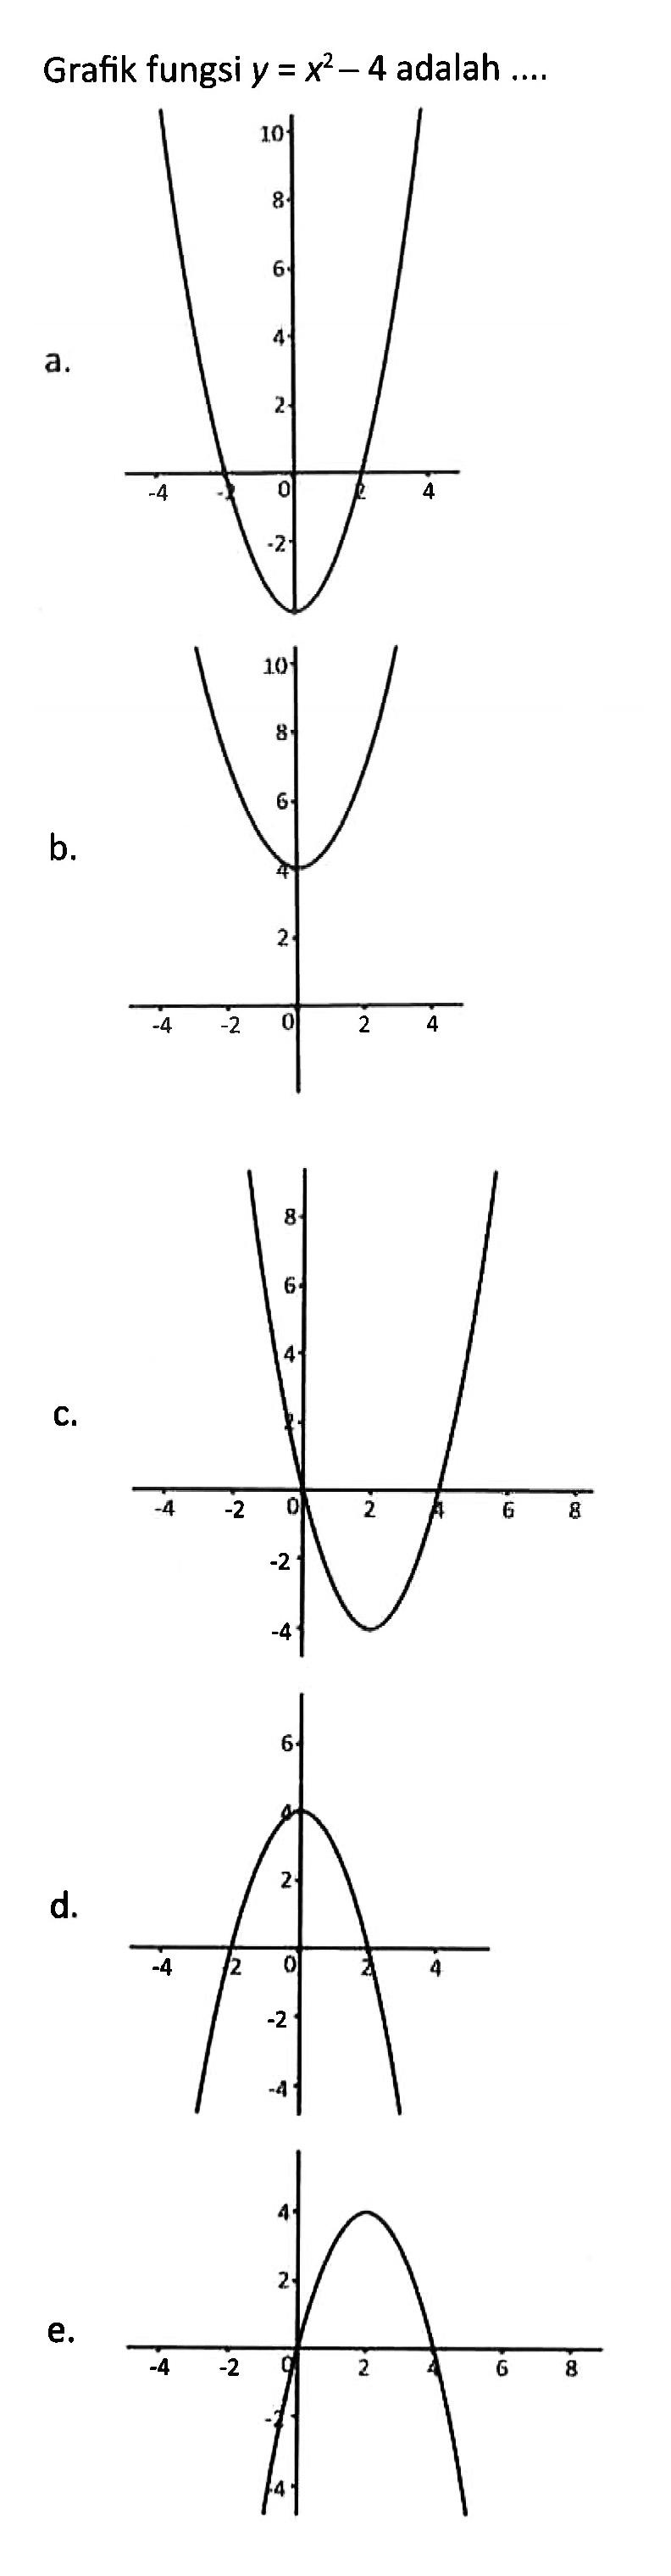 Grafik fungsi y = x^2 - 4 adalah...